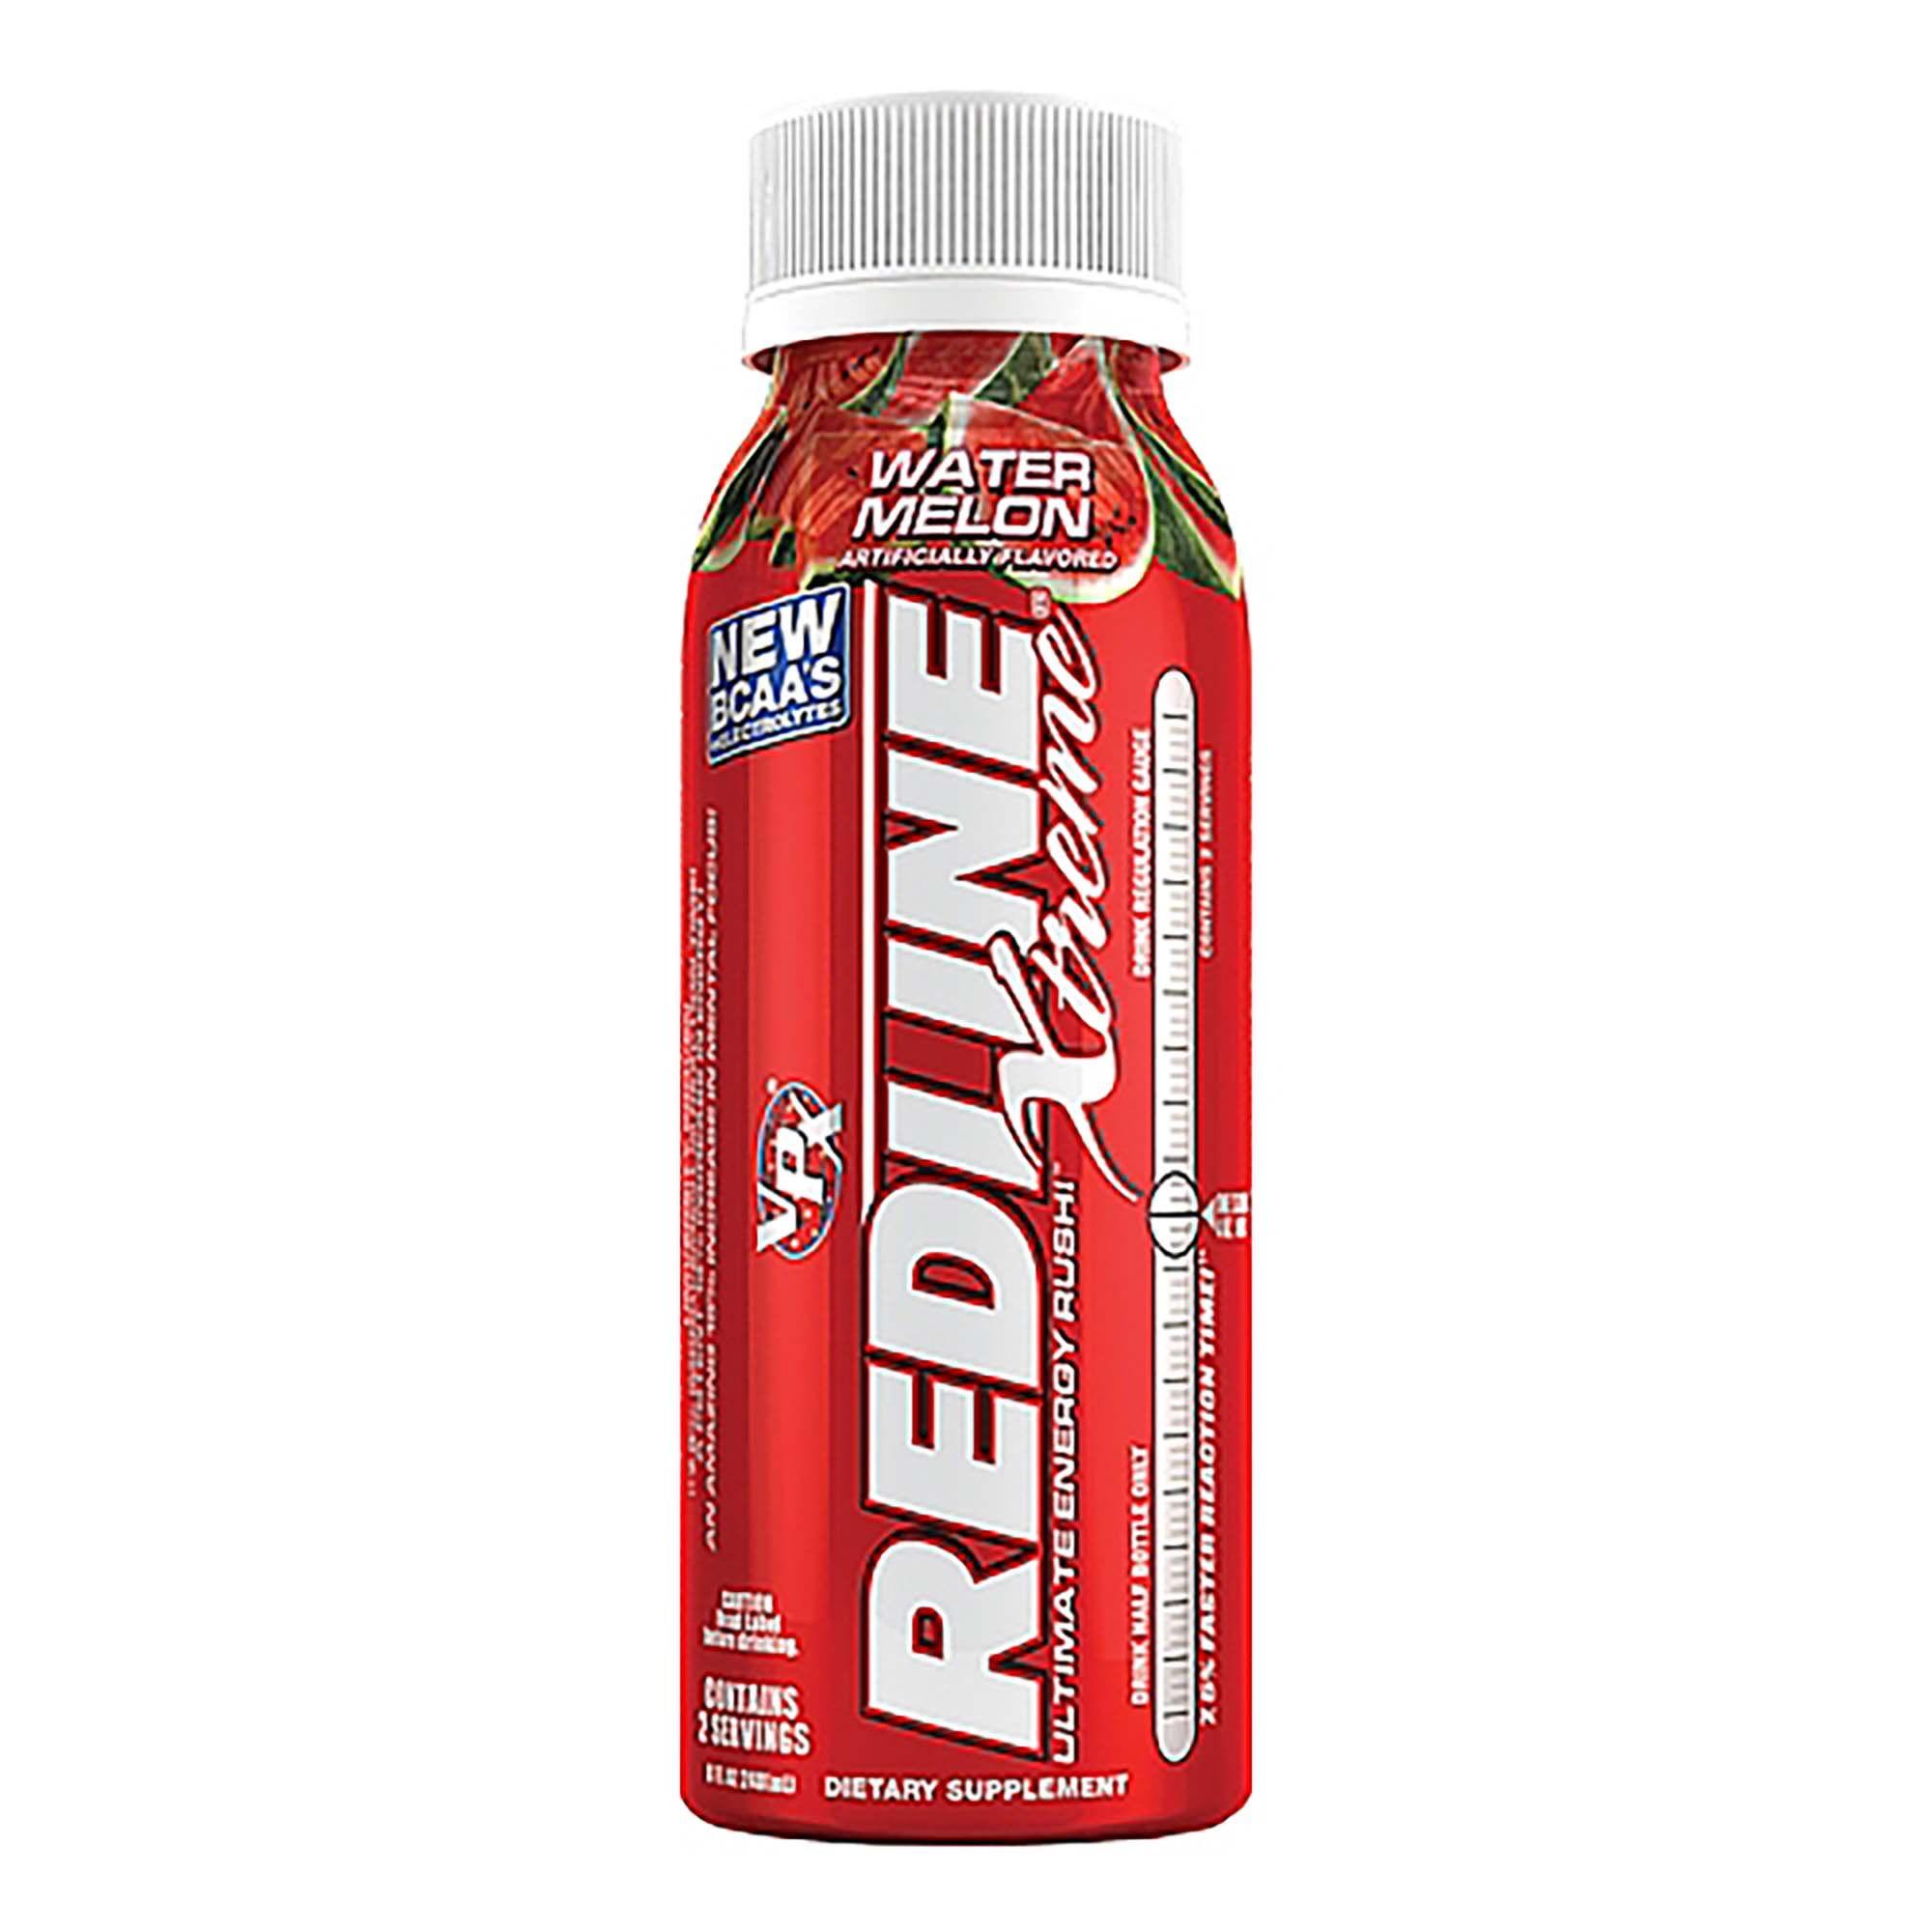 redline energy drink kum and go